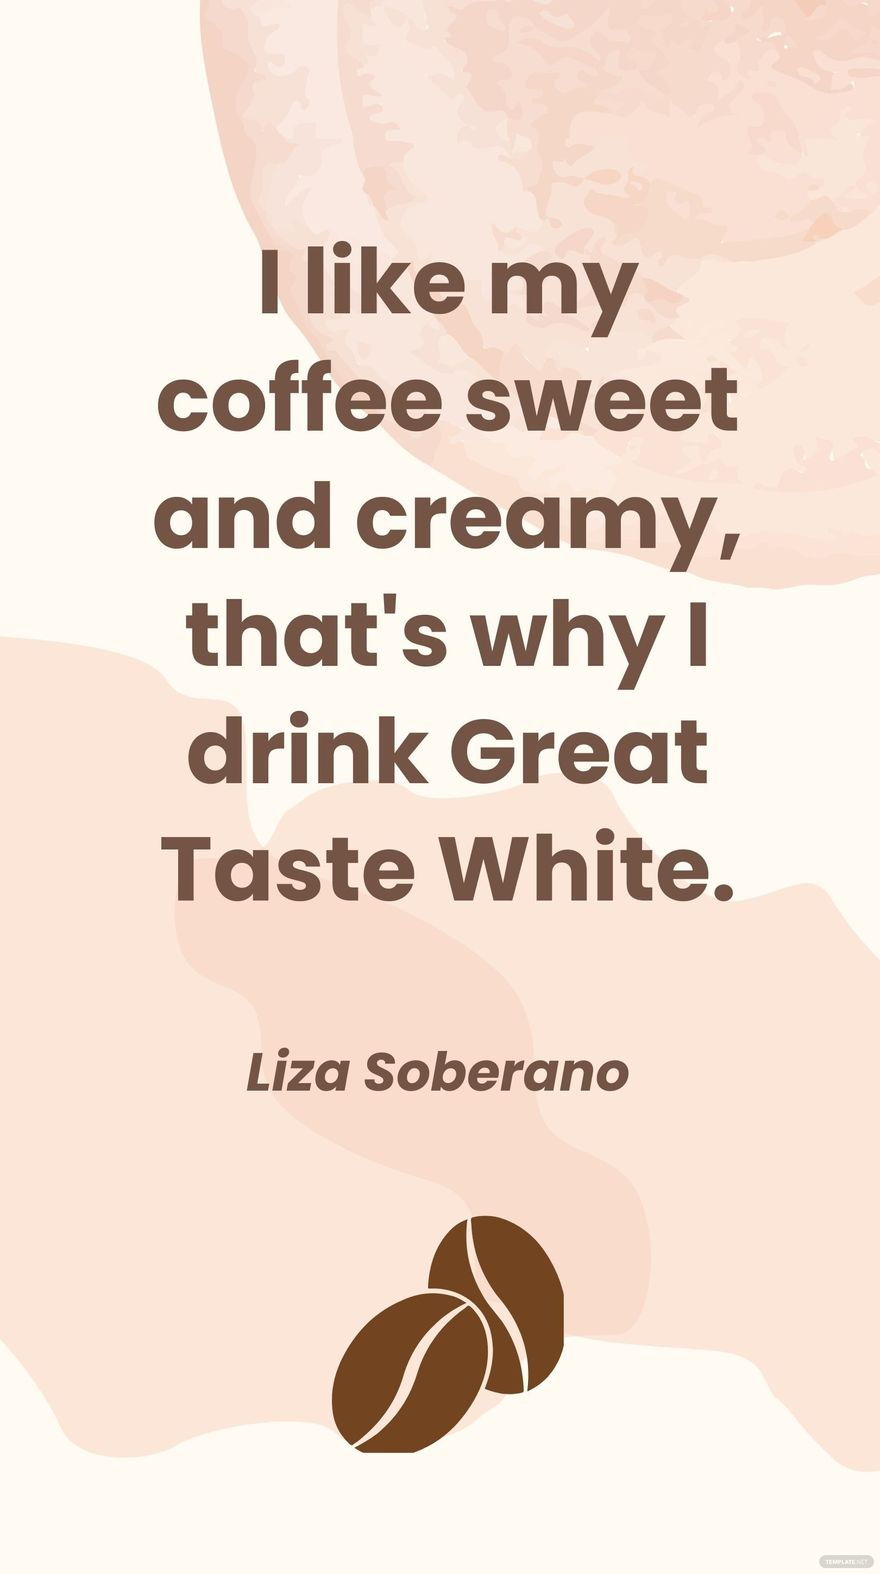 Free Liza Soberano - I like my coffee sweet and creamy, that's why I drink Great Taste White. in JPG